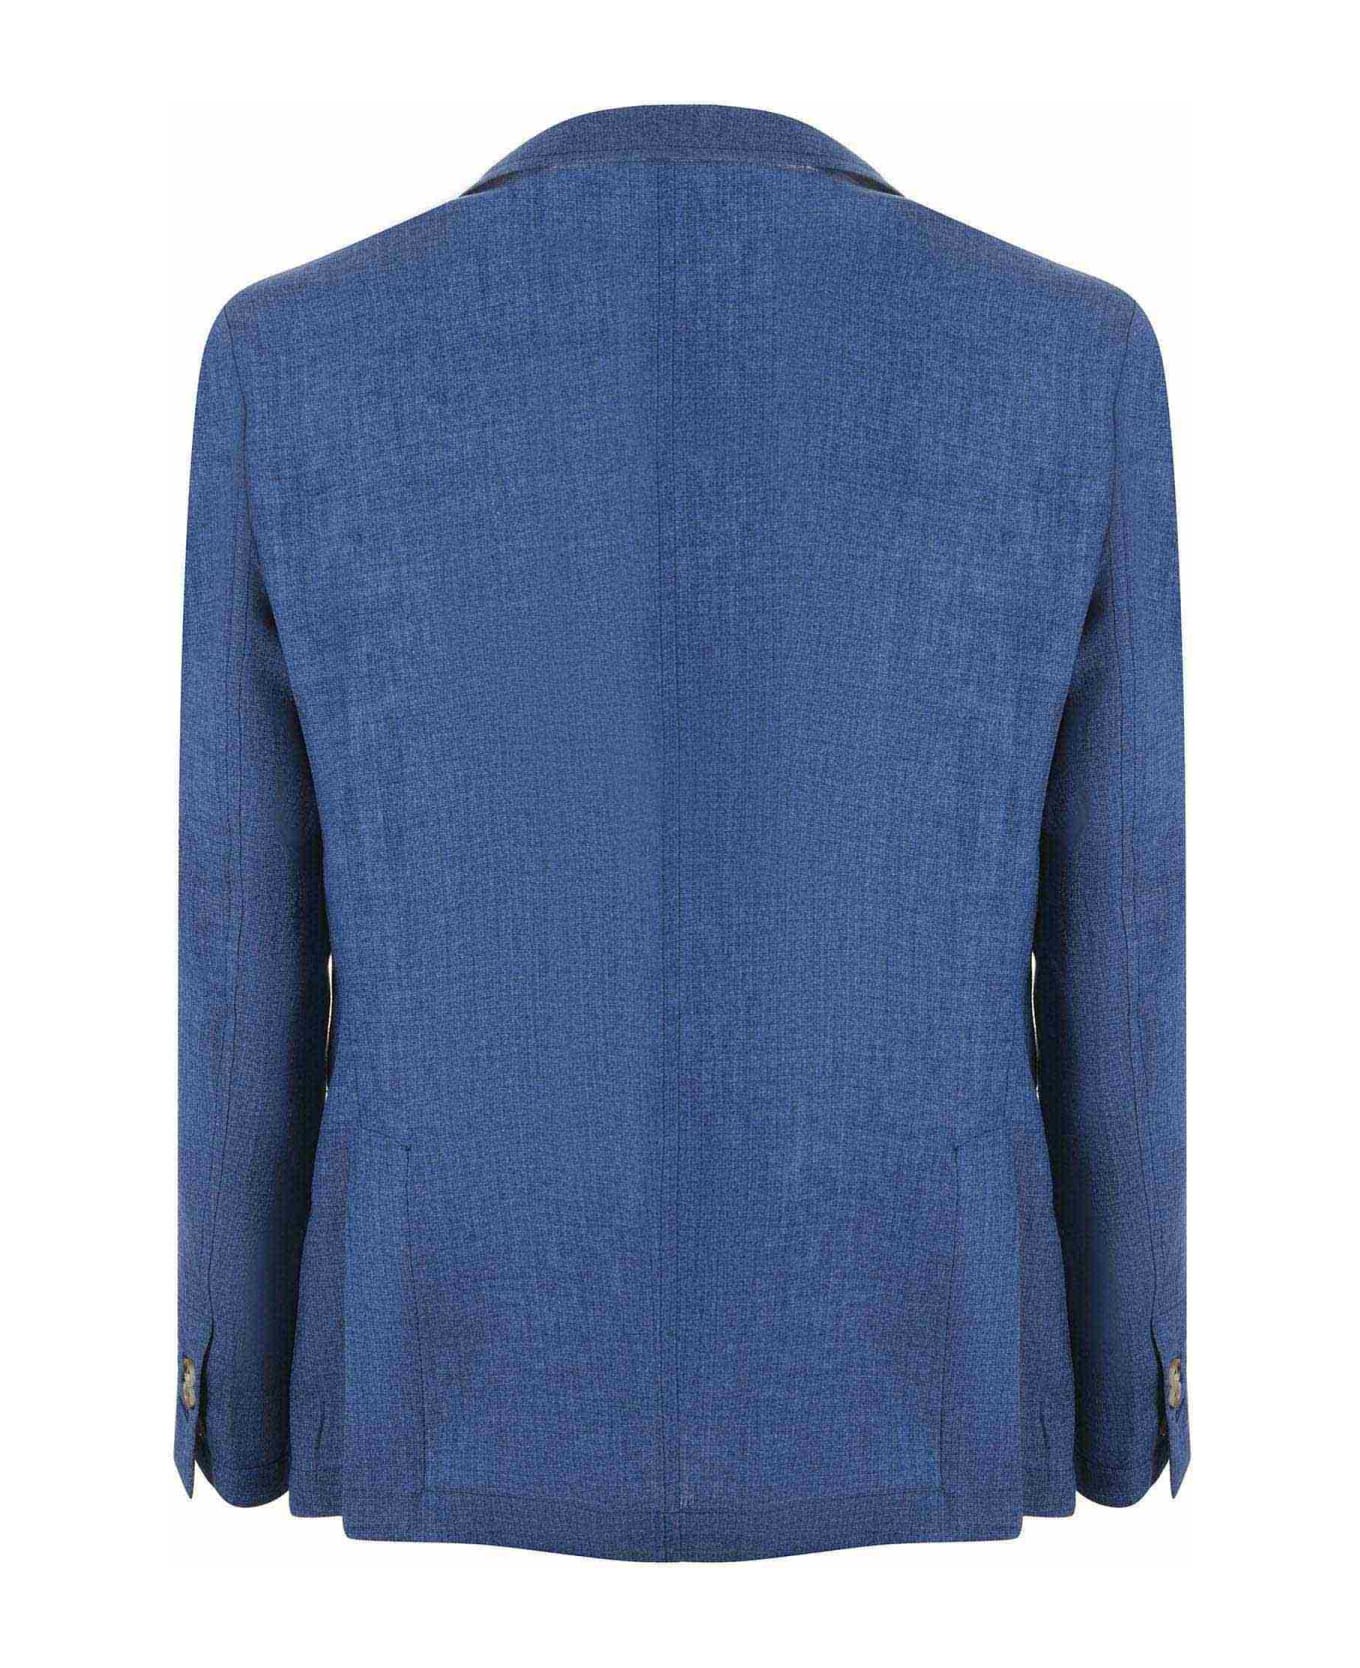 Paoloni Jacket - Blu